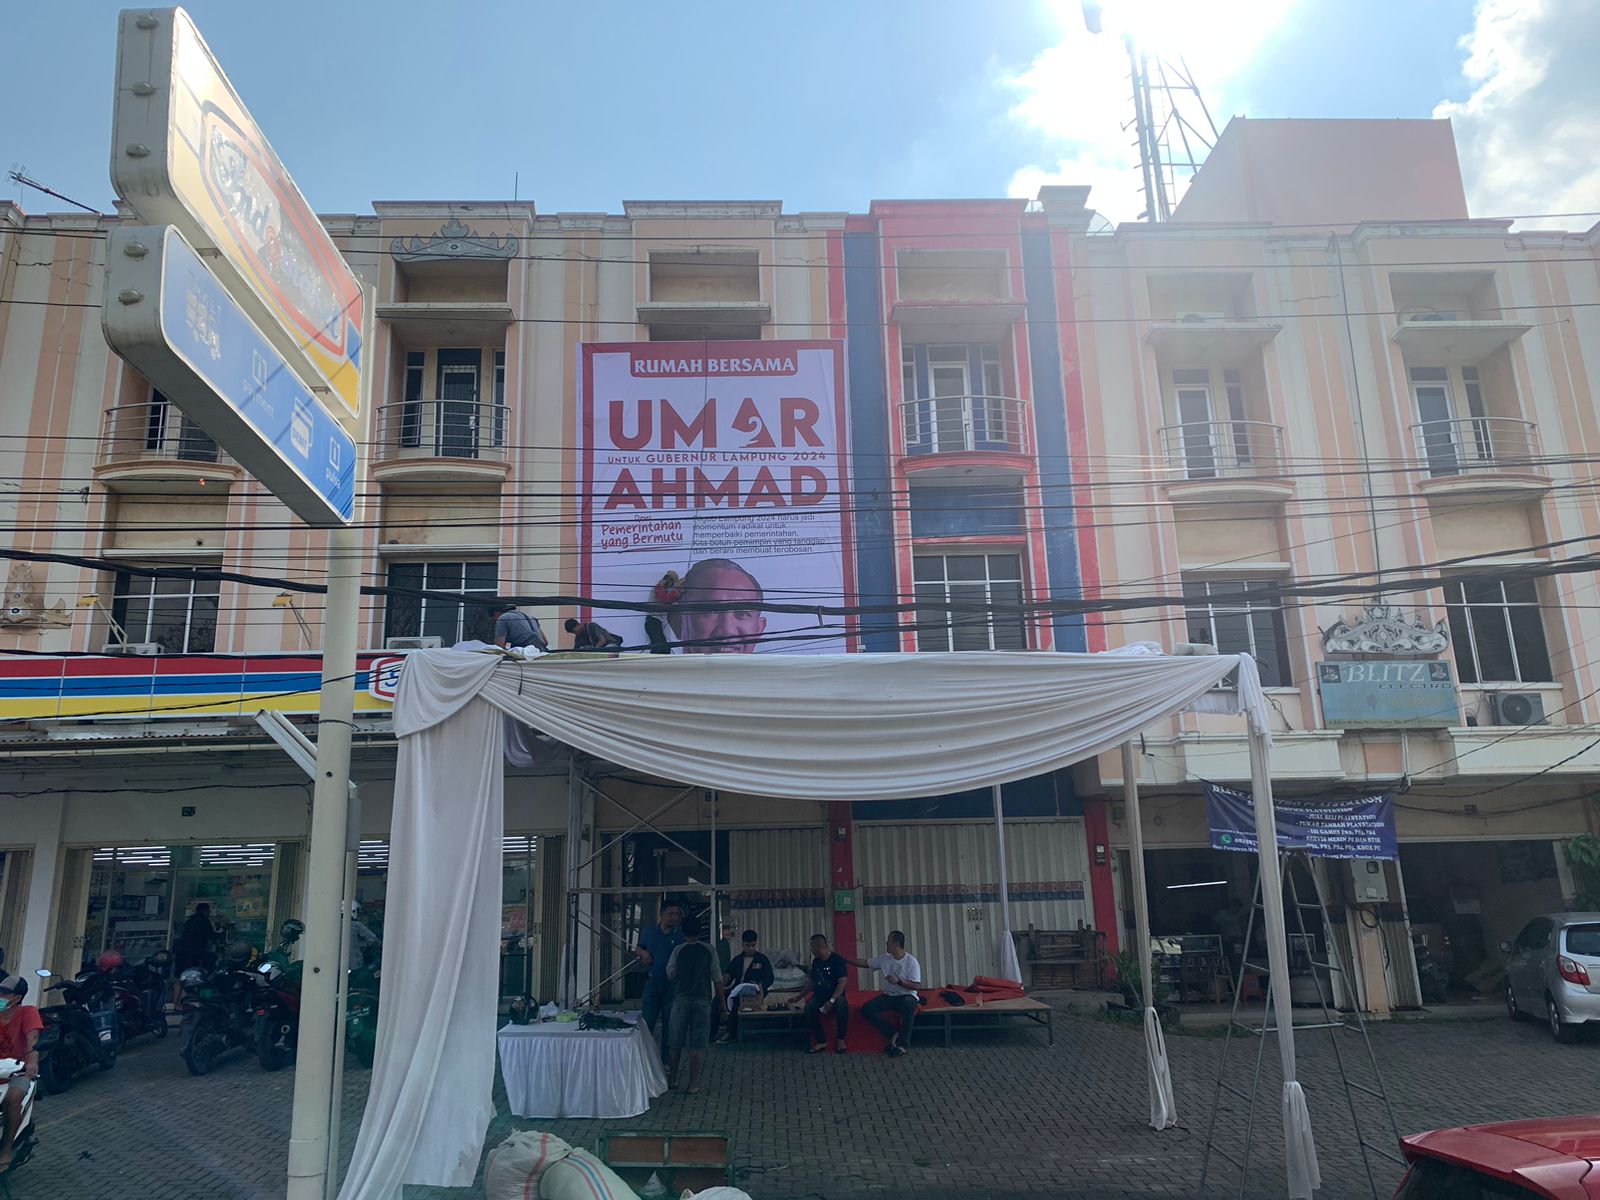 Barisan Relawan Umar Ahmad akan Deklarasikan 'Rumah Bersama'